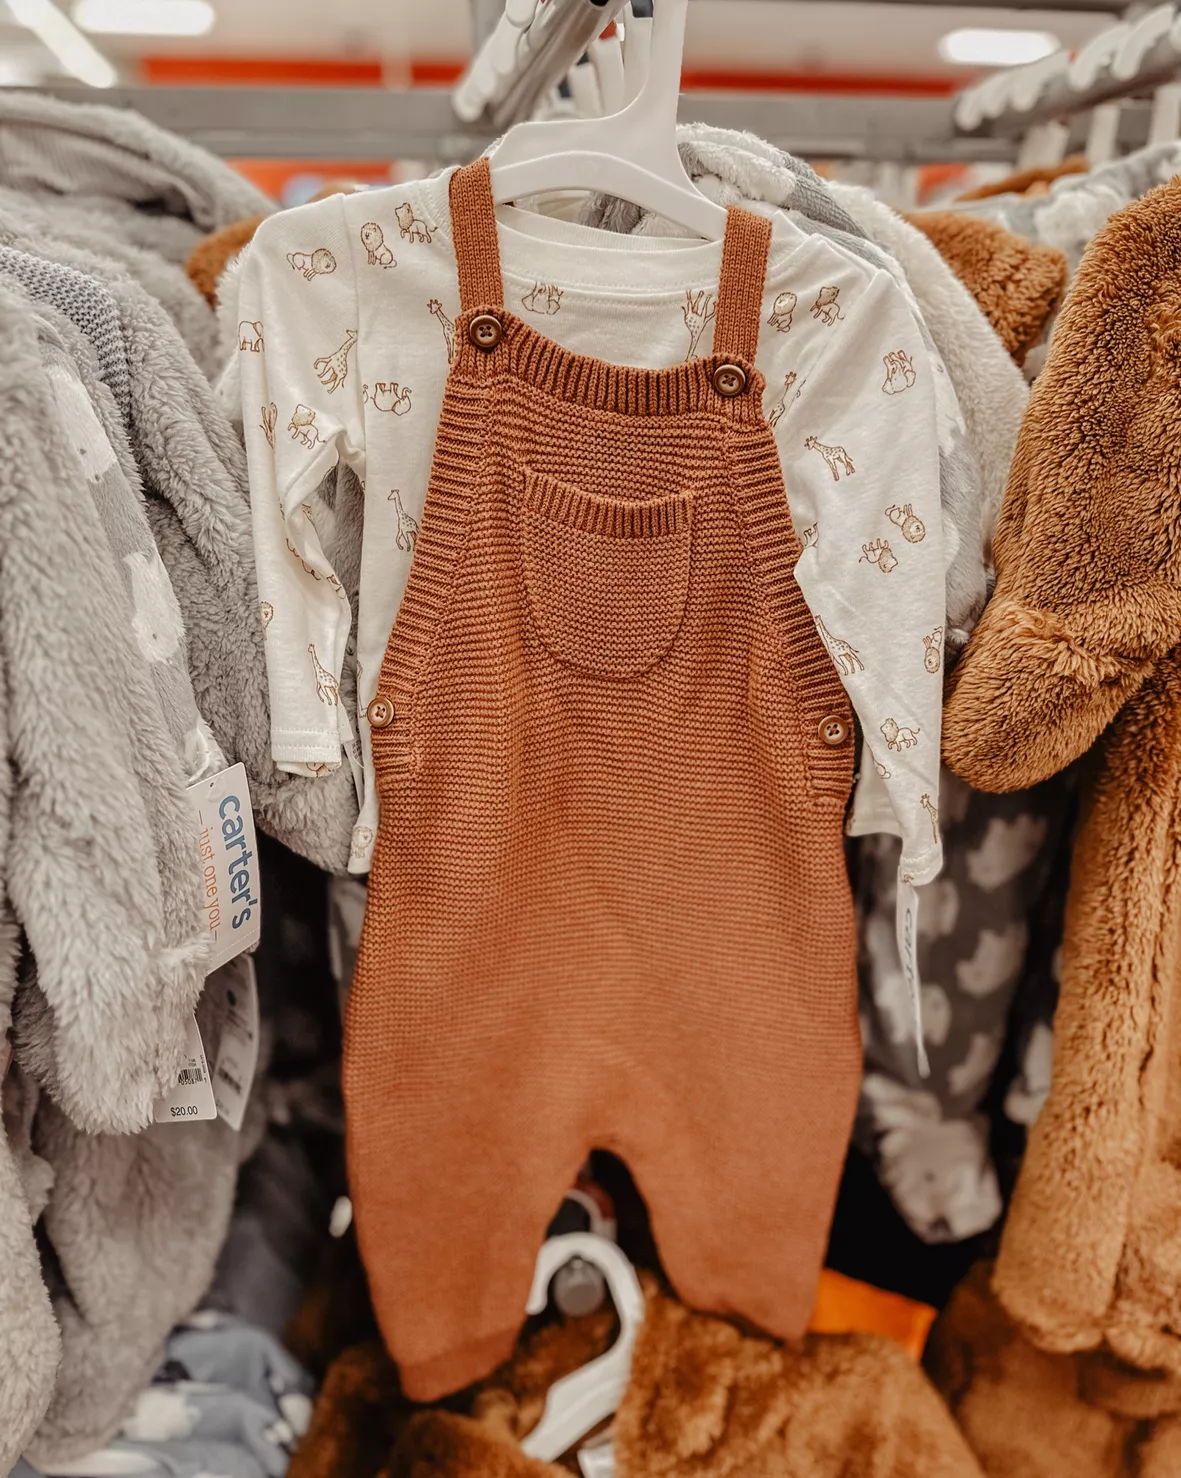 Toddler Clothing : Target